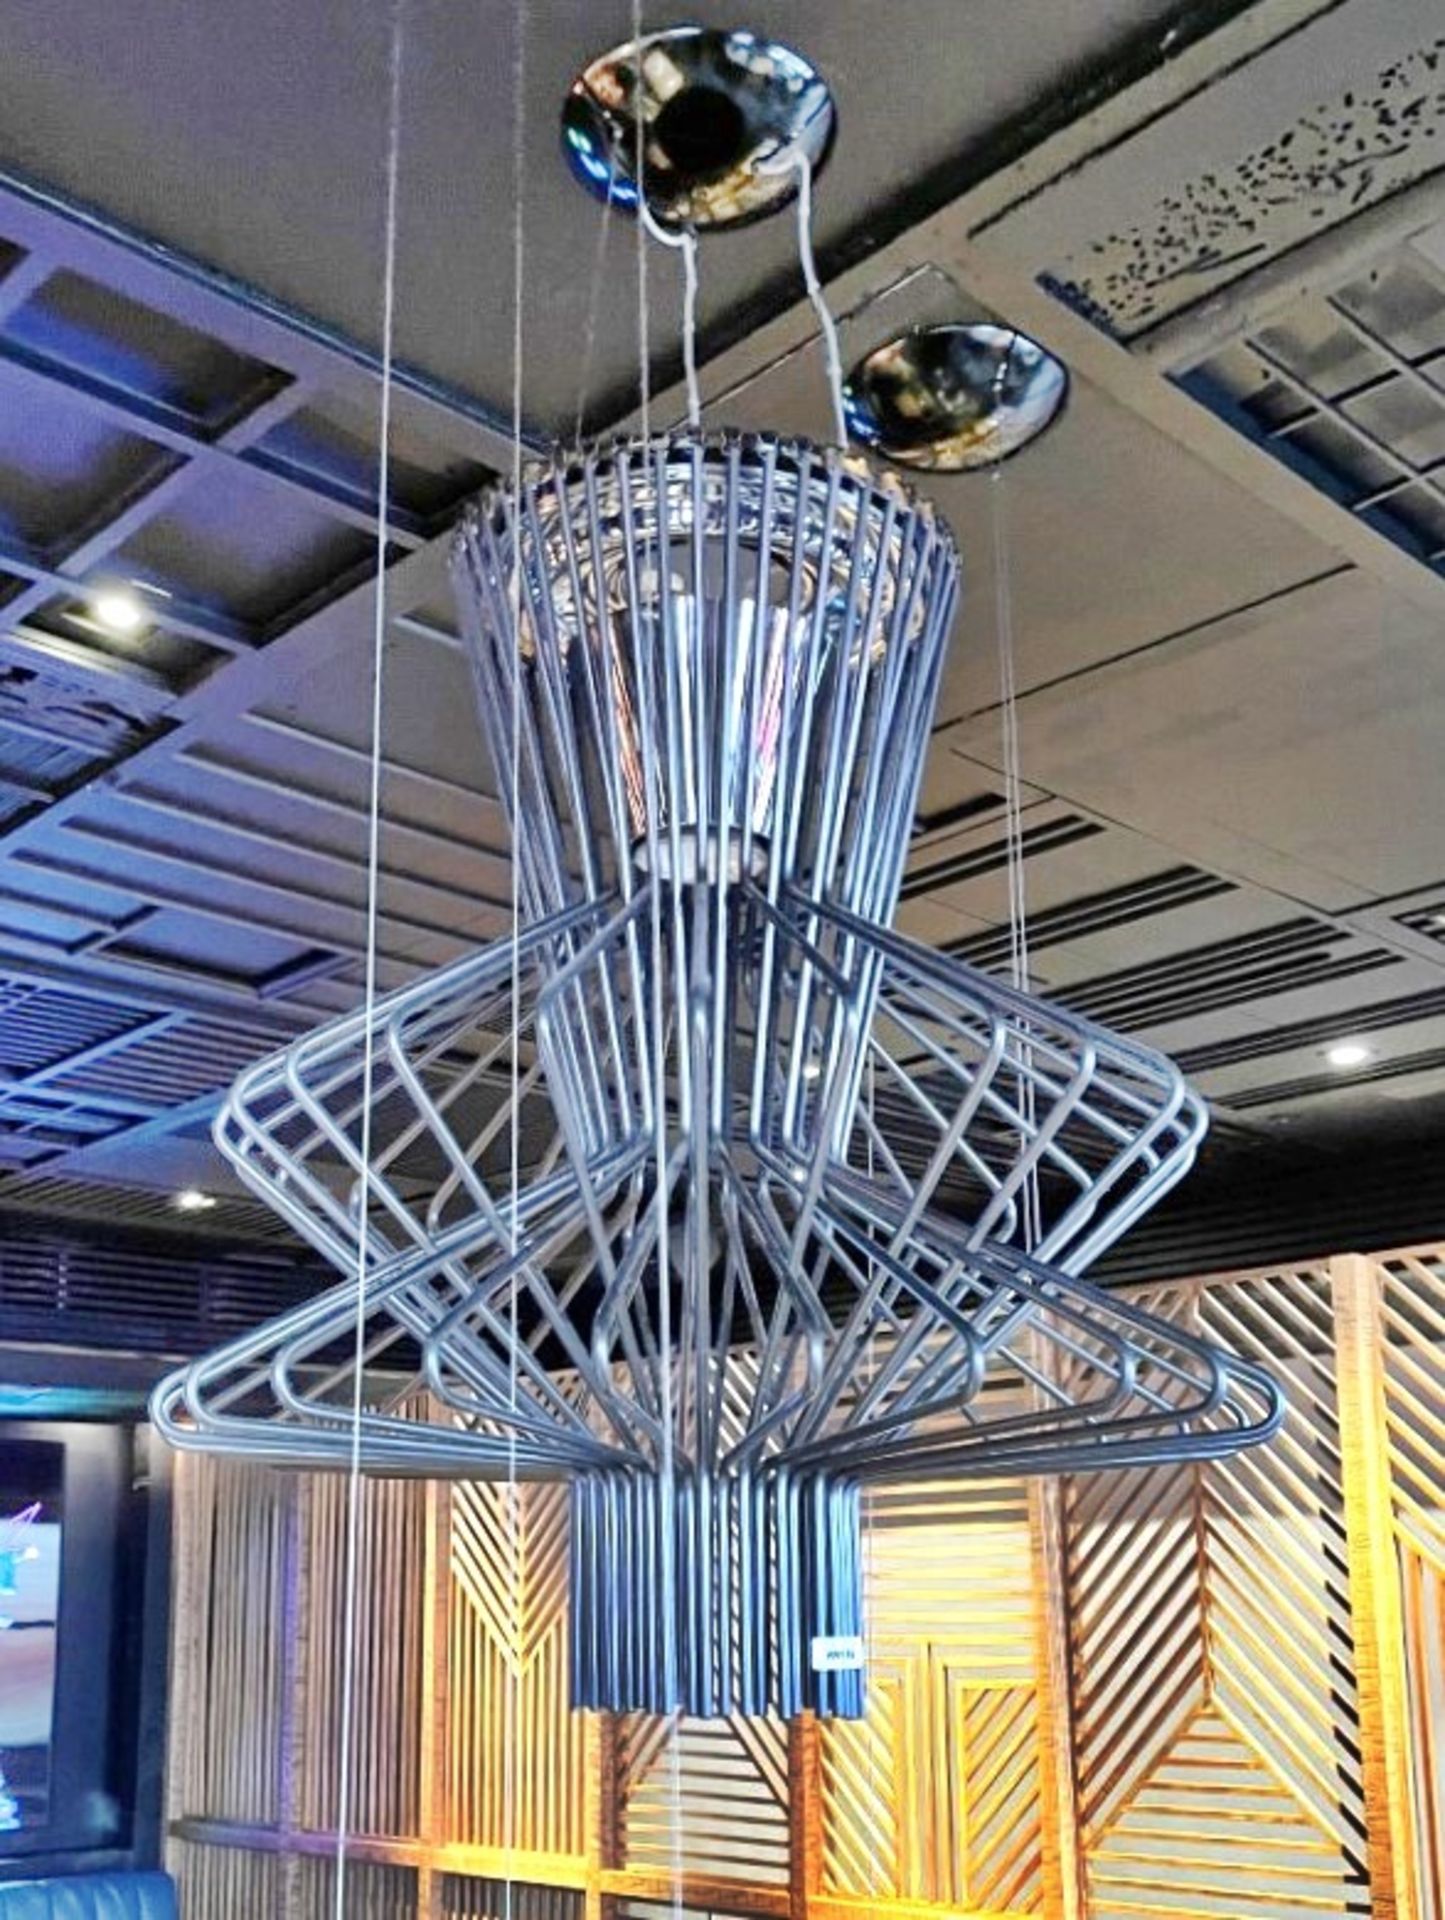 1 x Foscarini Allegro Ritmico LED Aluminium Three-Dimensional Ceiling Pendant Light